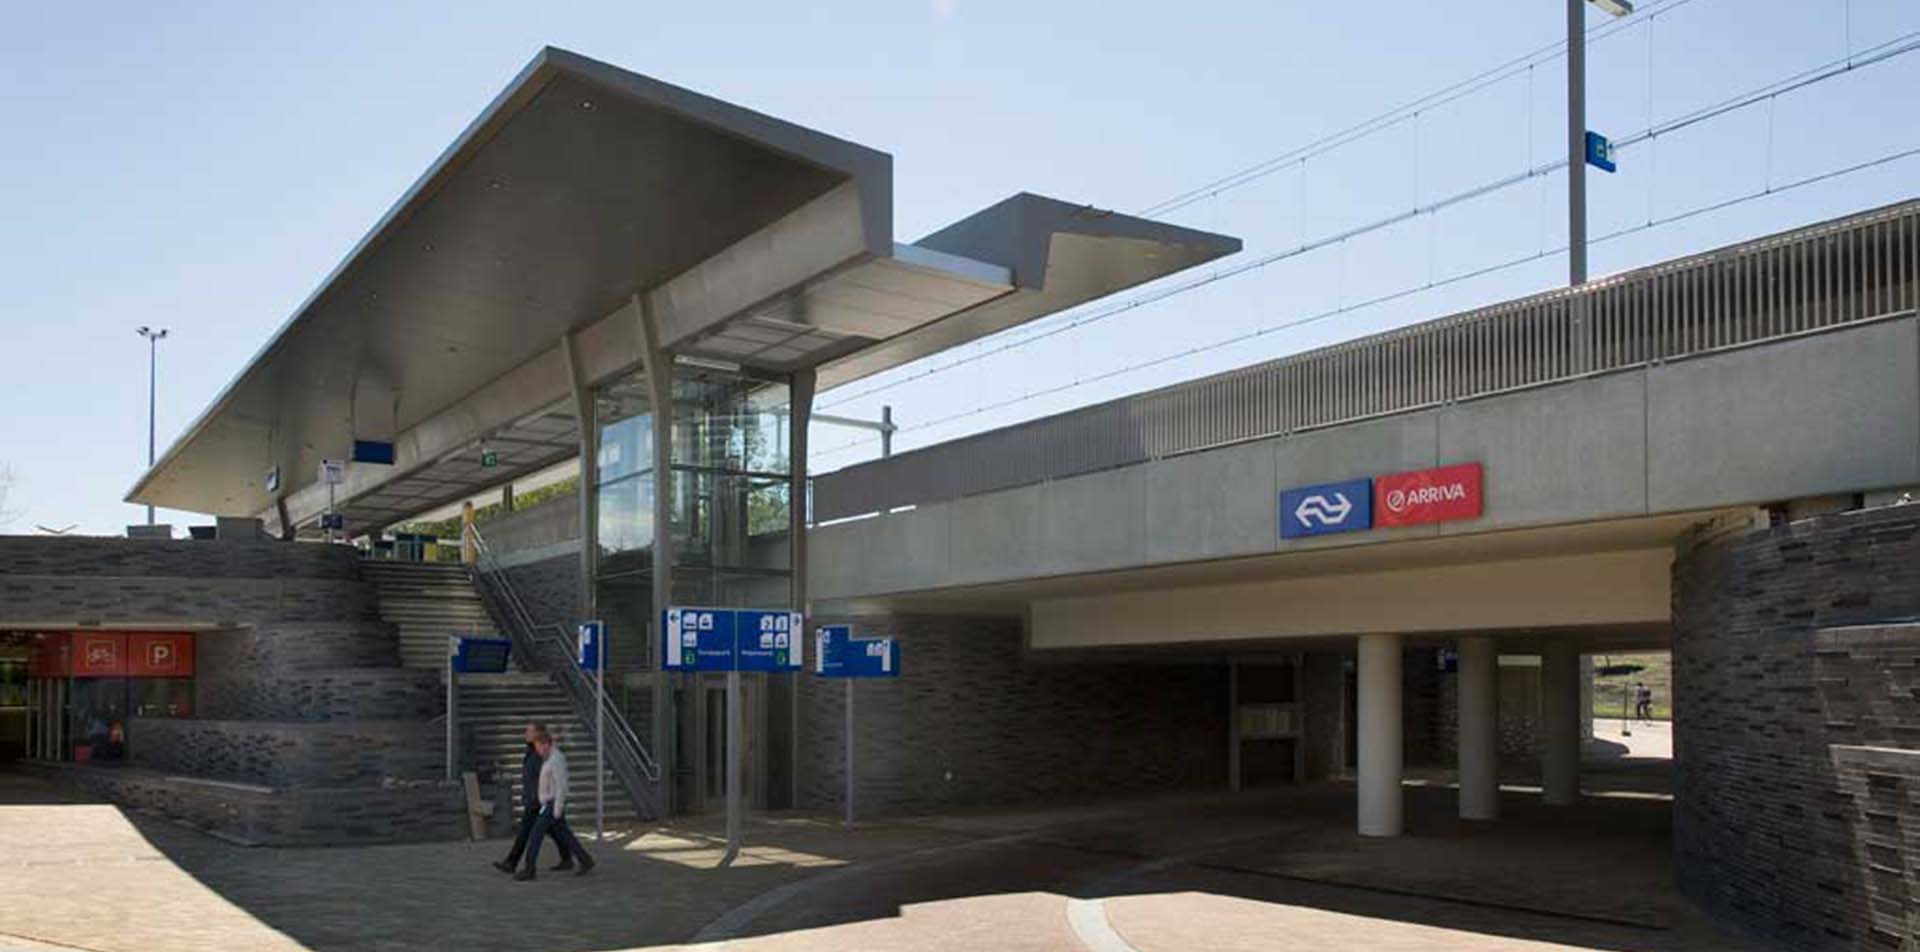 station Groningen Europapark